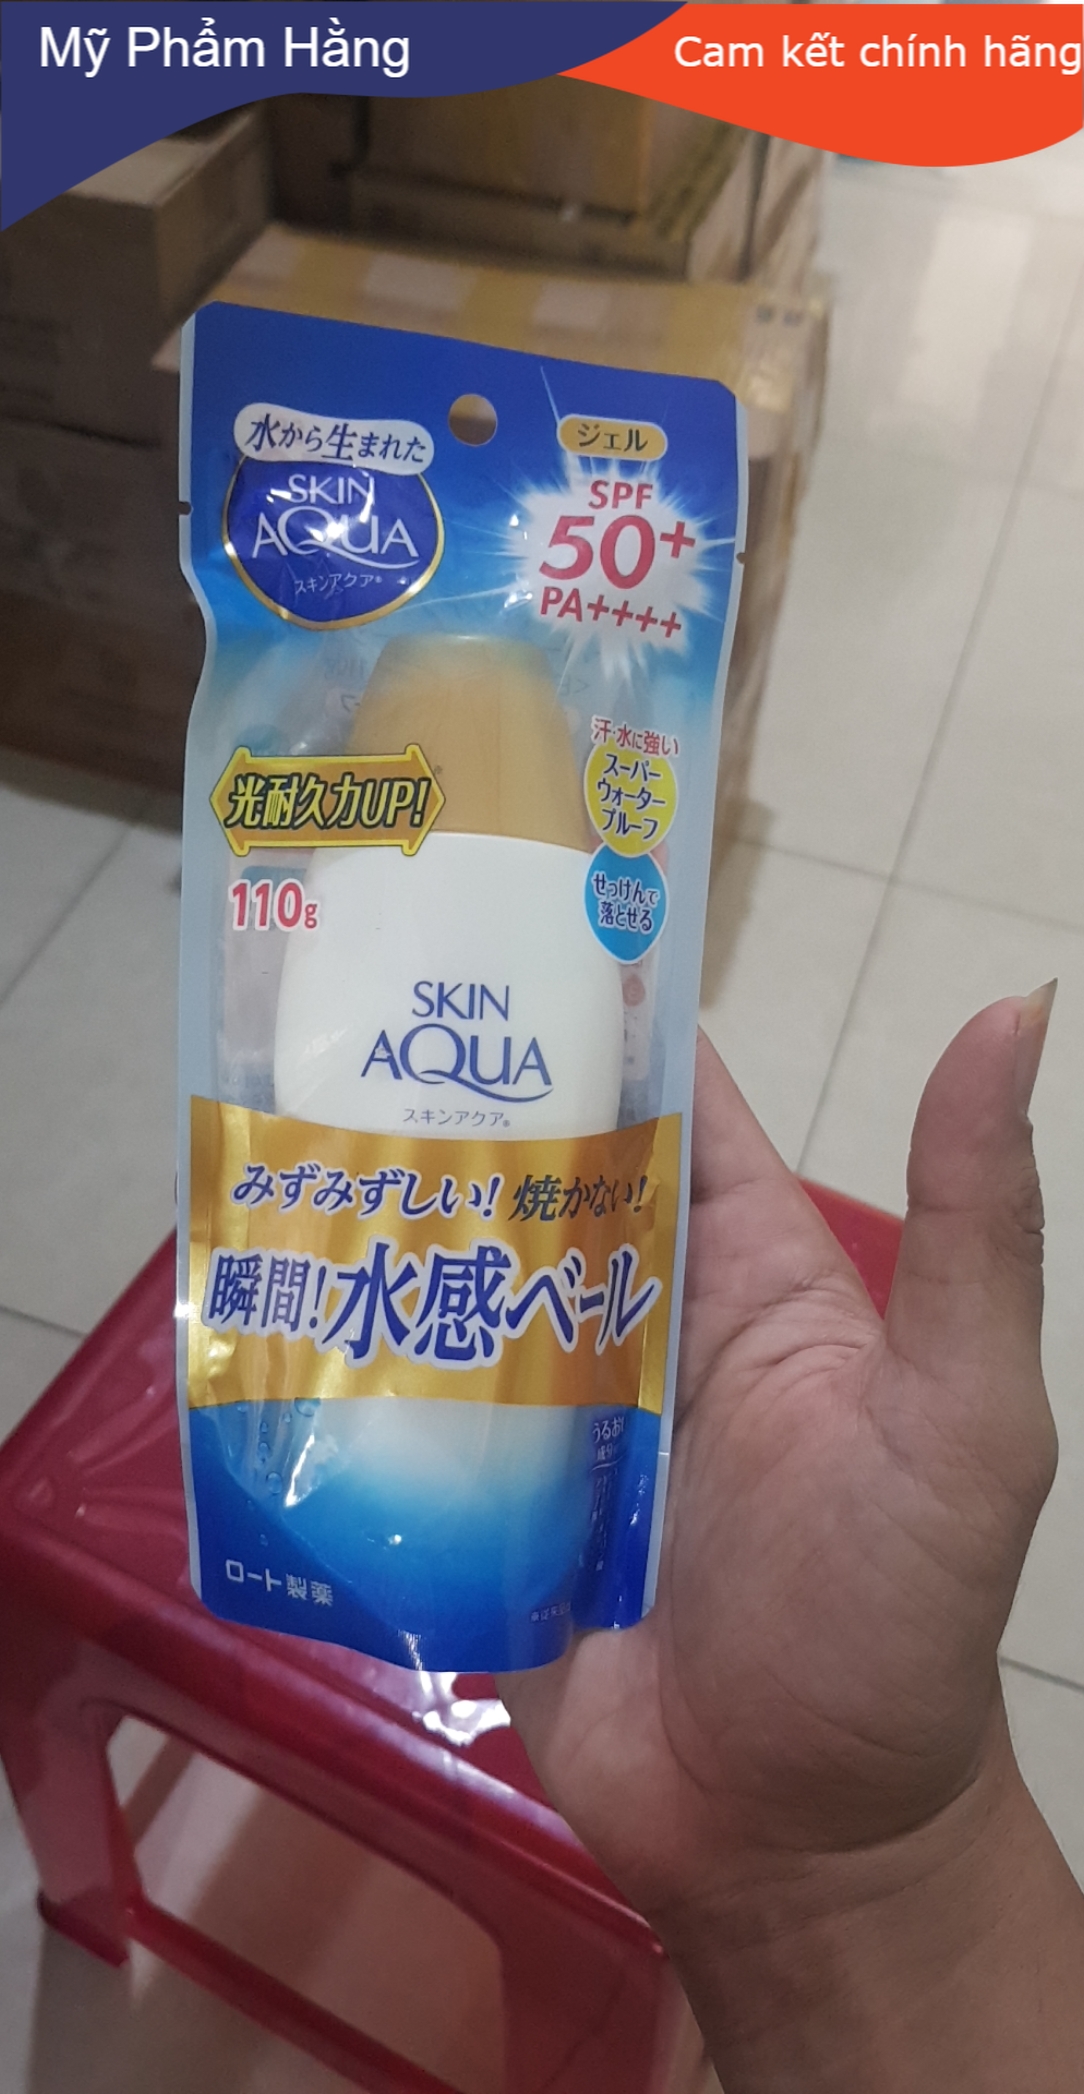 Kem chống nắng Skin Aqua Nắp đồng 110g